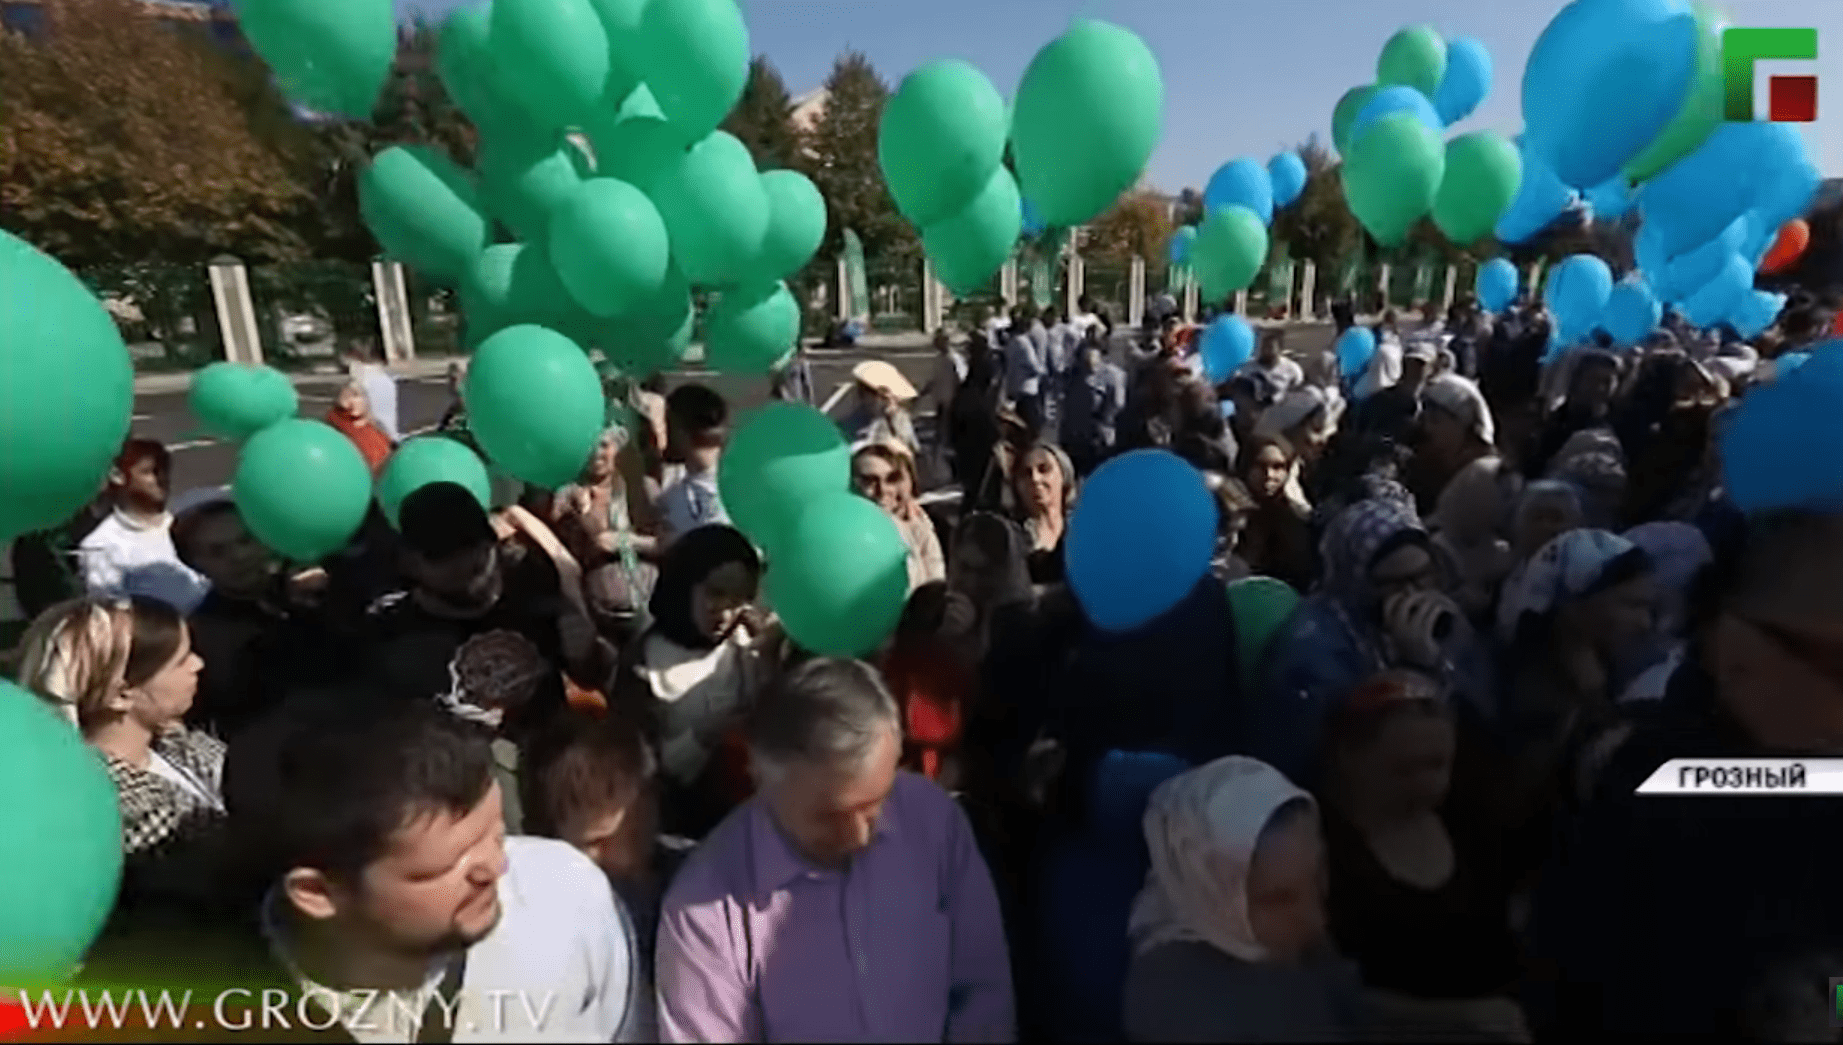 Участники празднования Дня города в Грозном. 5 октября 2019 года. Кадр видео ЧГТРК "Грозный" https://www.youtube.com/watch?v=PAJkgP4VvPE